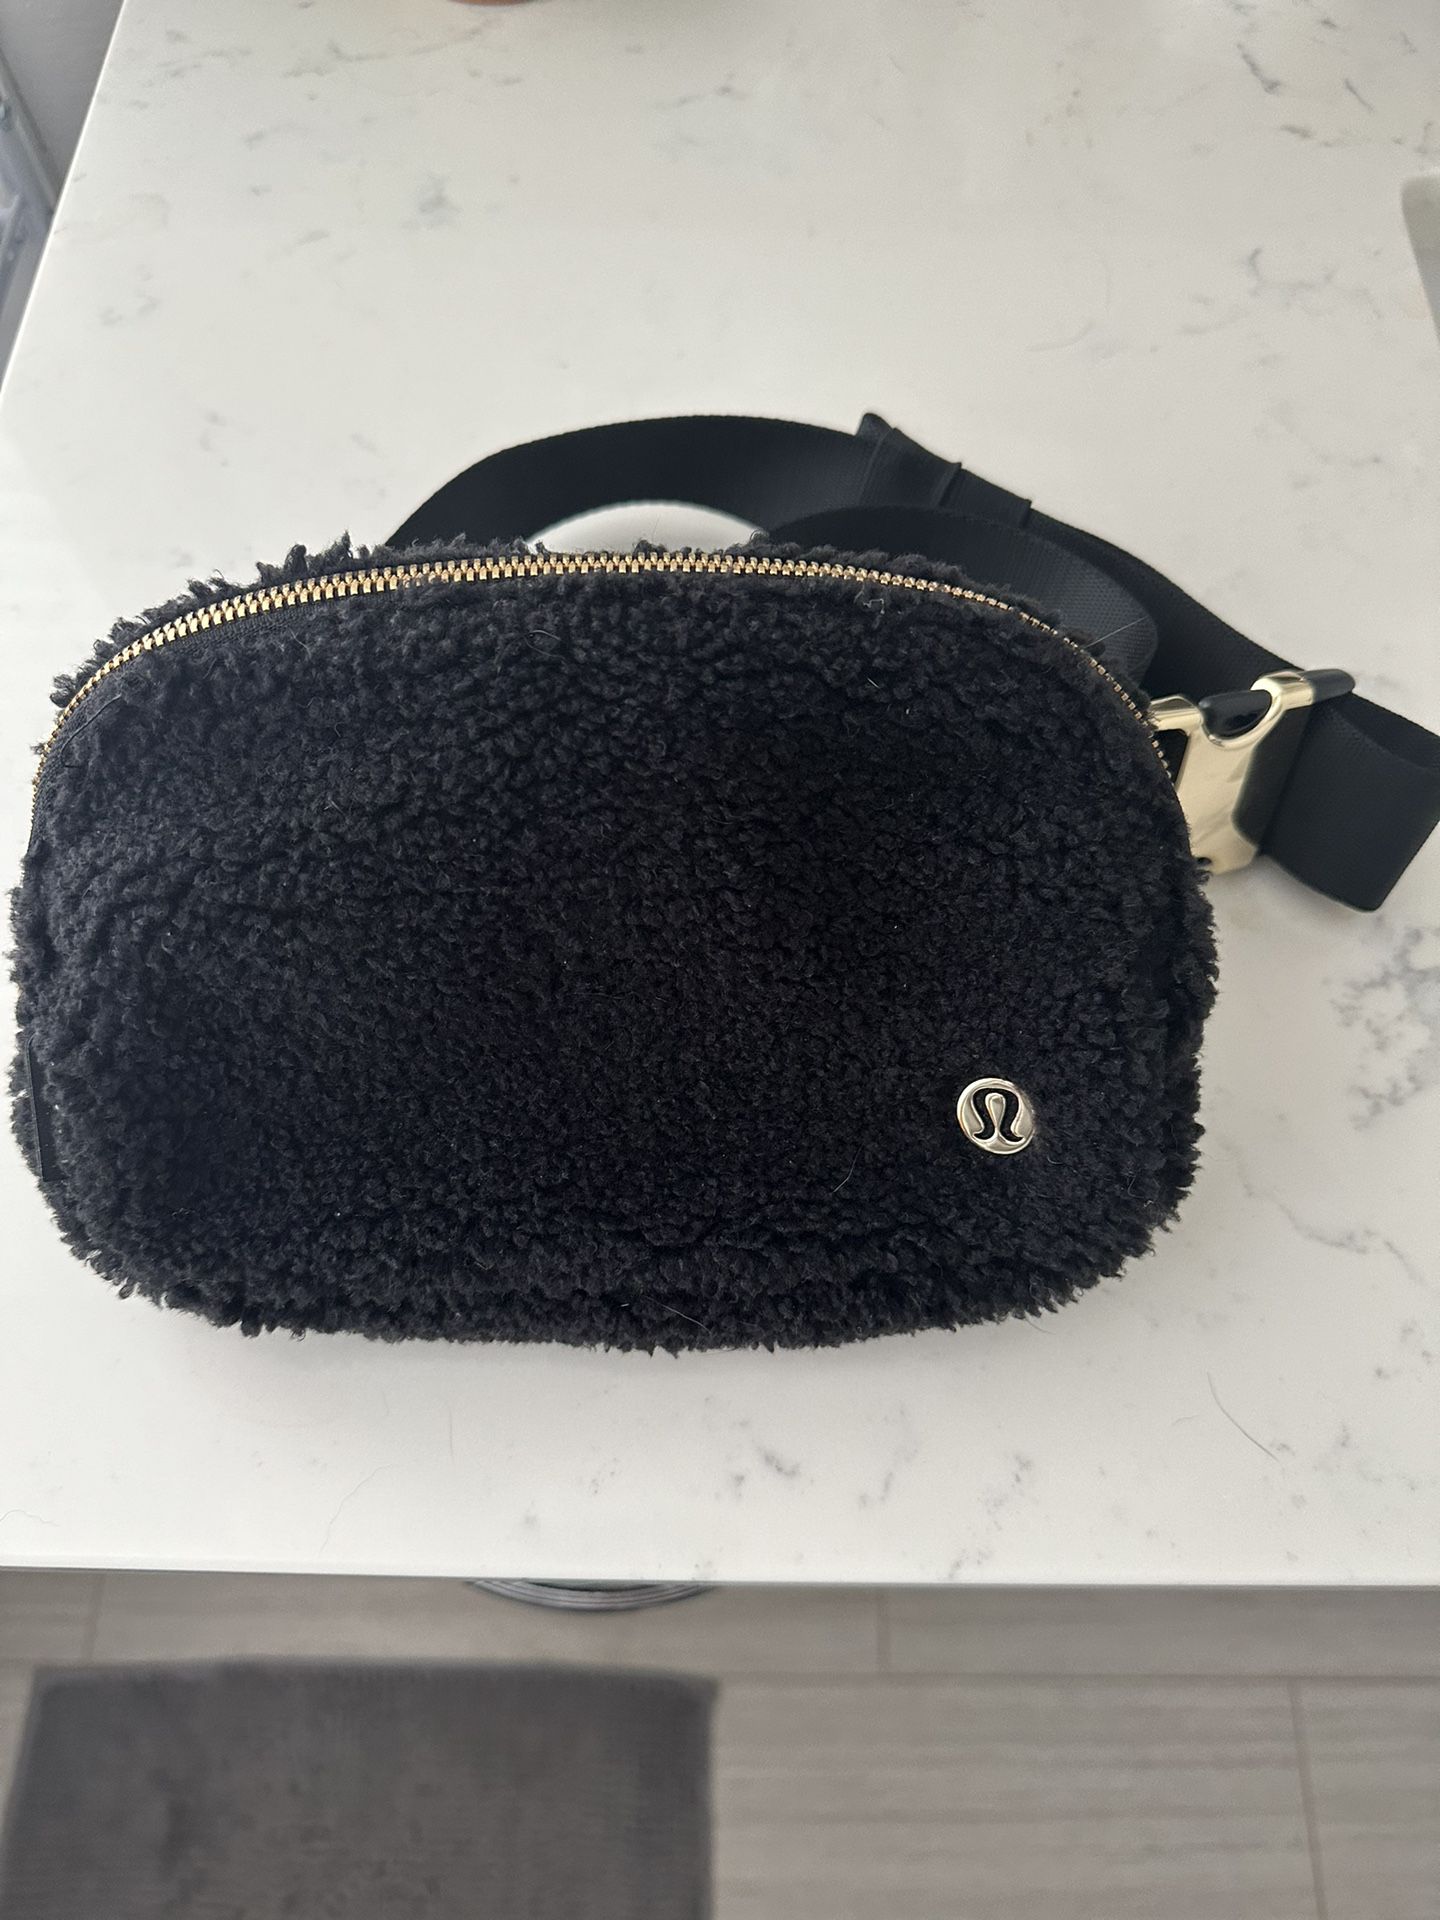 lululemon BELT BAG - Black Teddy Fur